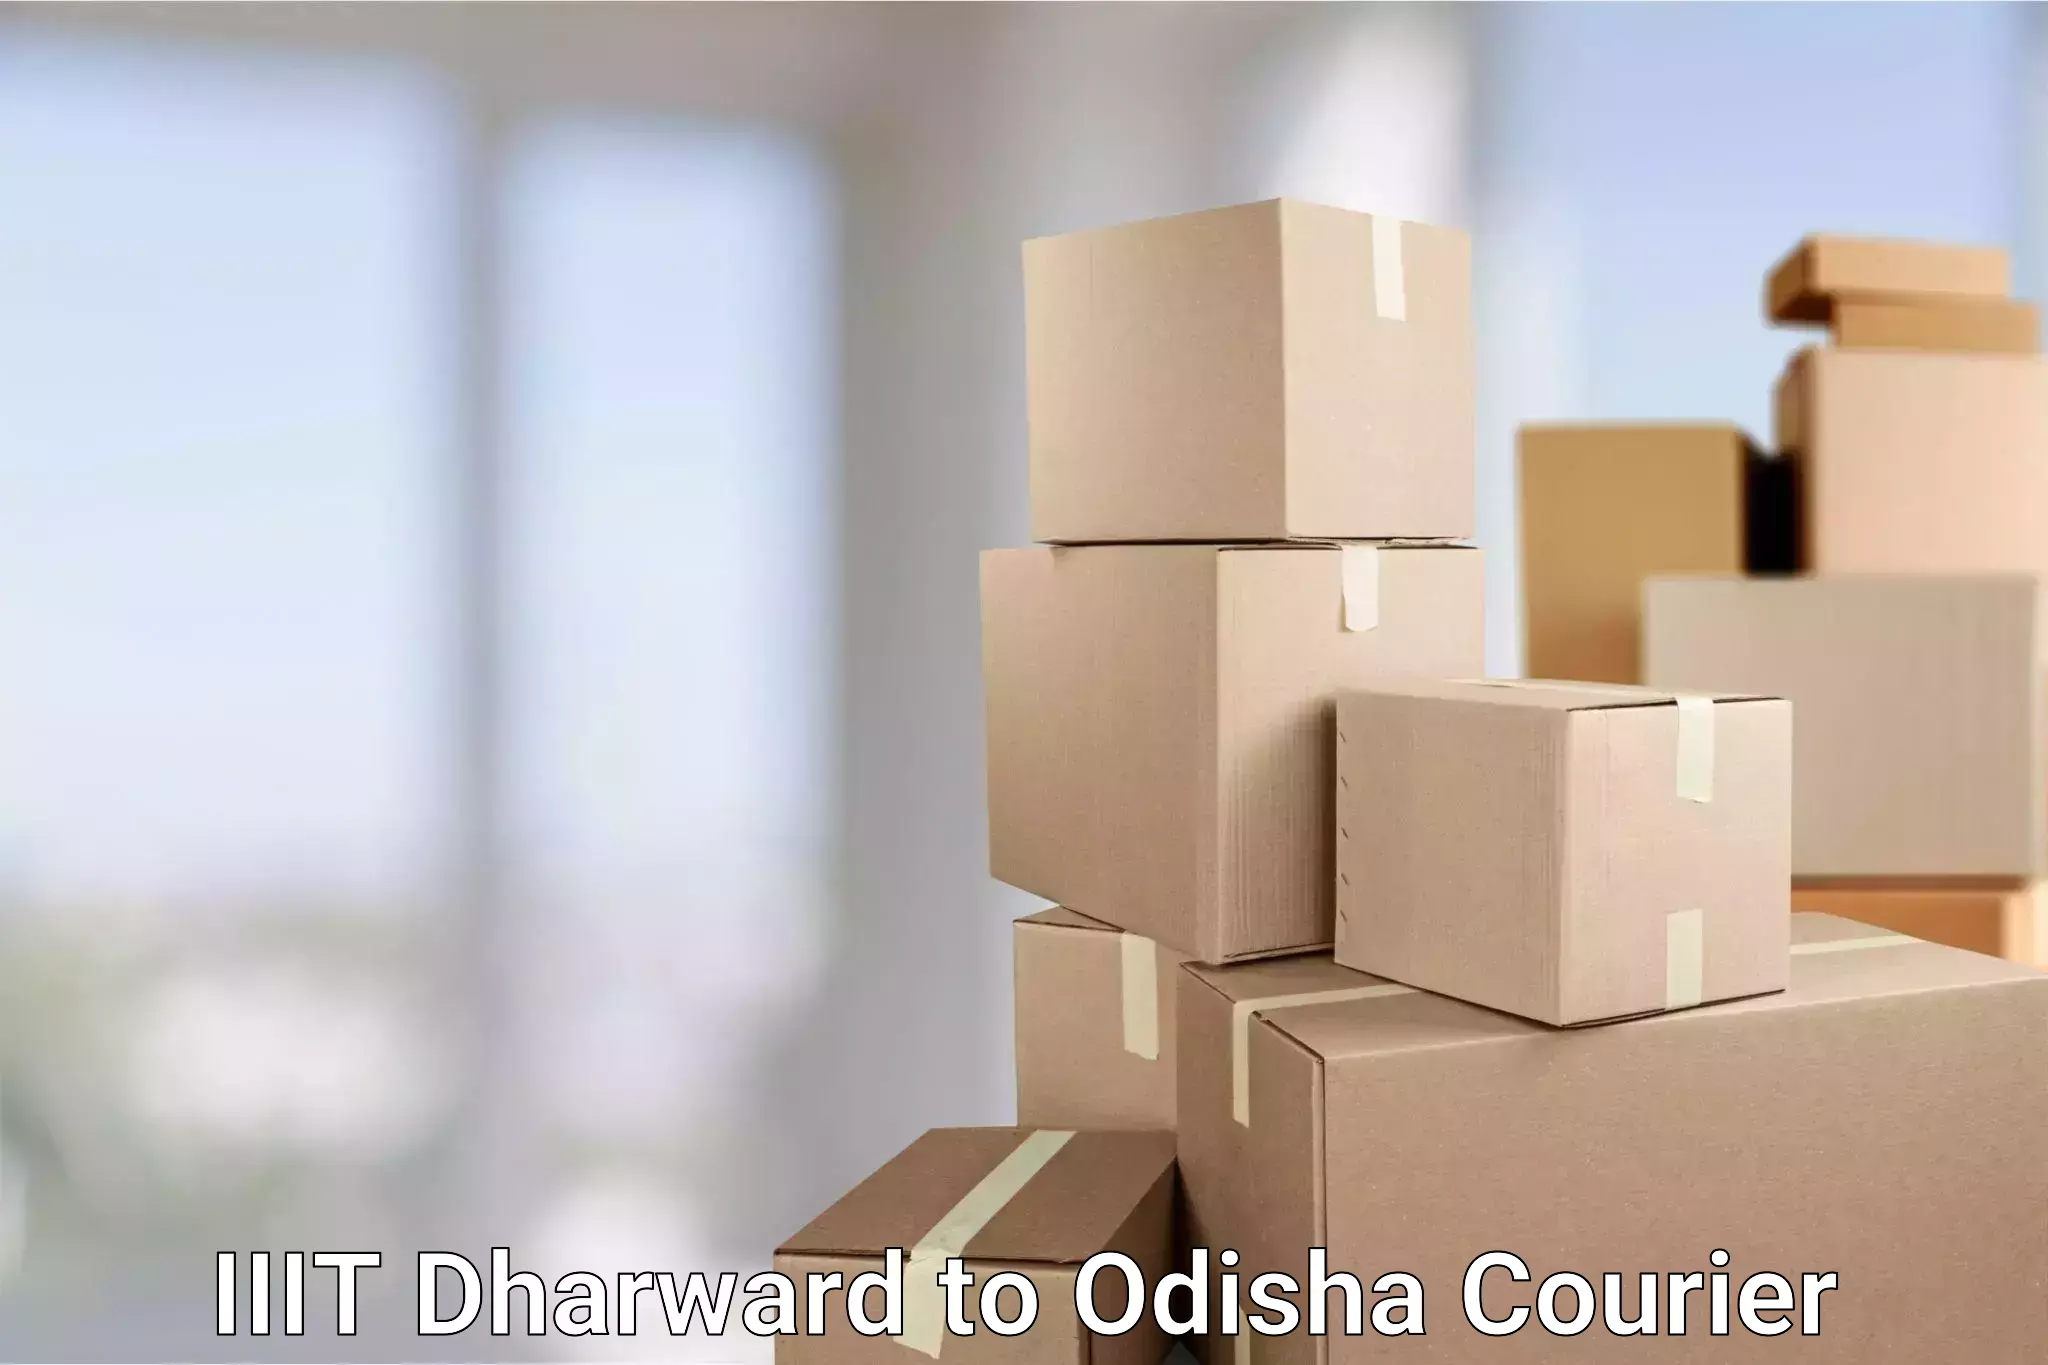 User-friendly courier app IIIT Dharward to Patkura